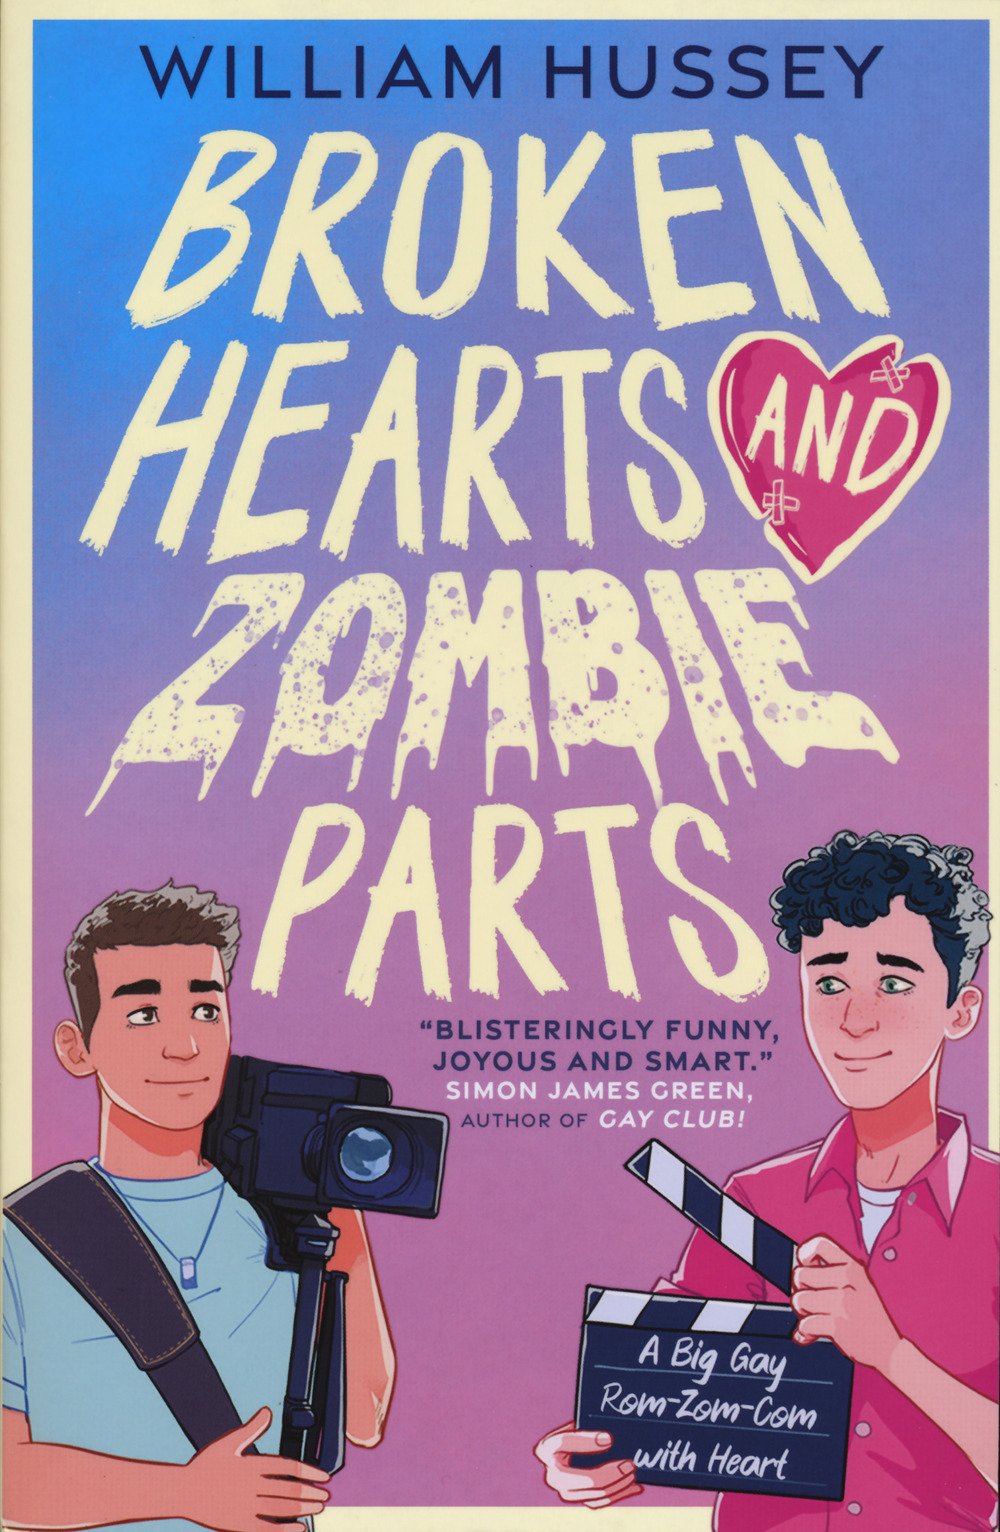 Broken hearts & zombie parts